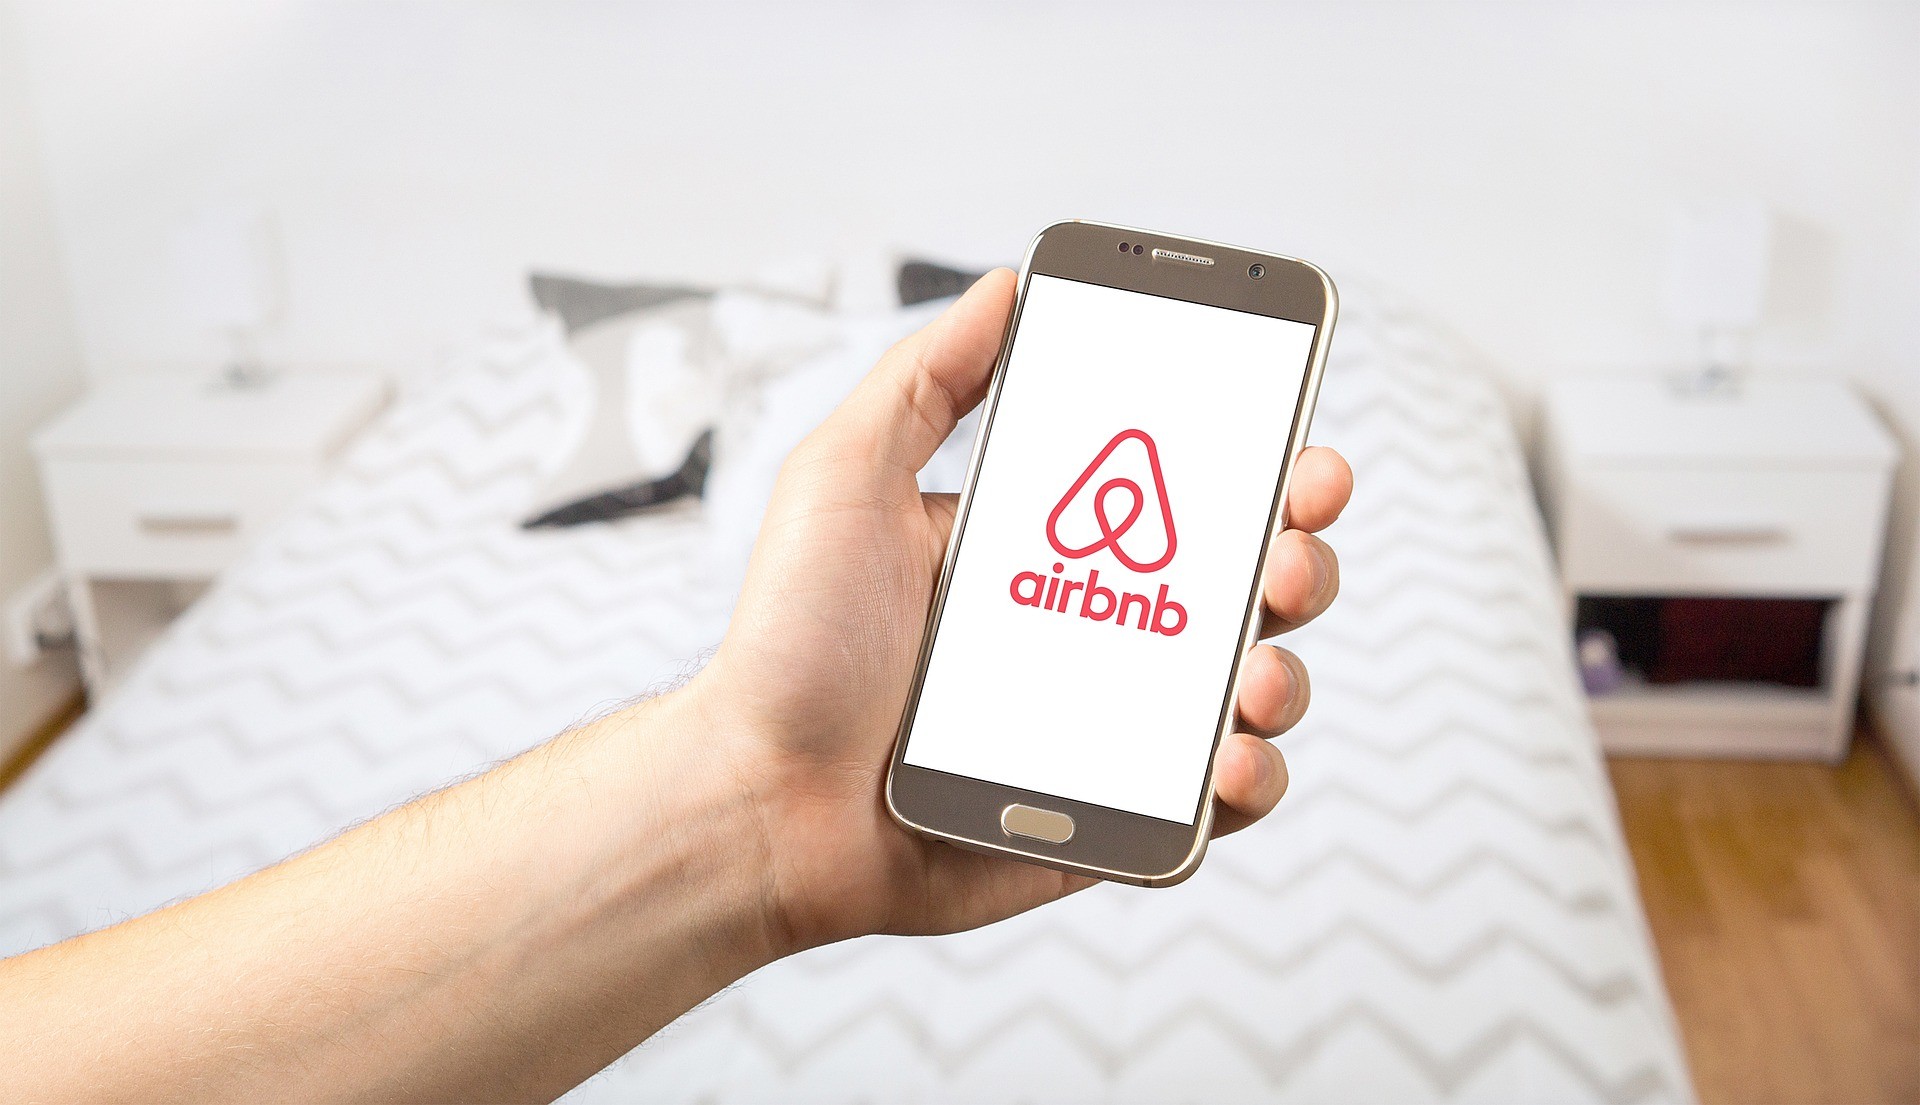 Diputados aprueban proyecto de Airbnb en segundo debate: anfitriones y apps pagarán impuestos para operar